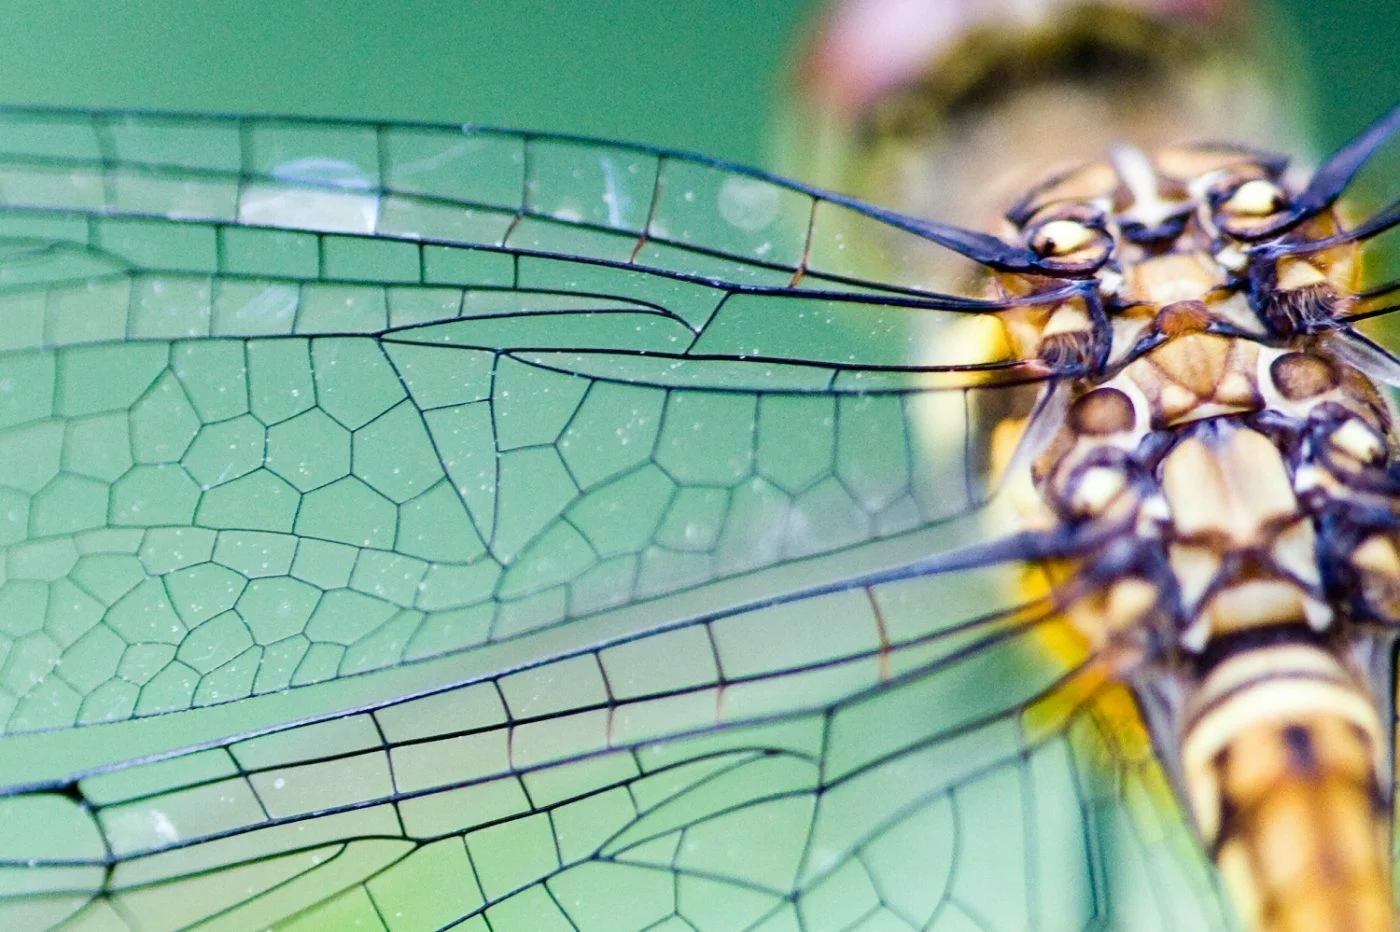 A libélula é um exemplo da aplicação da Biomimética. Seu movimento inspirou o estudo de micro veículos aéreos não tripulados.